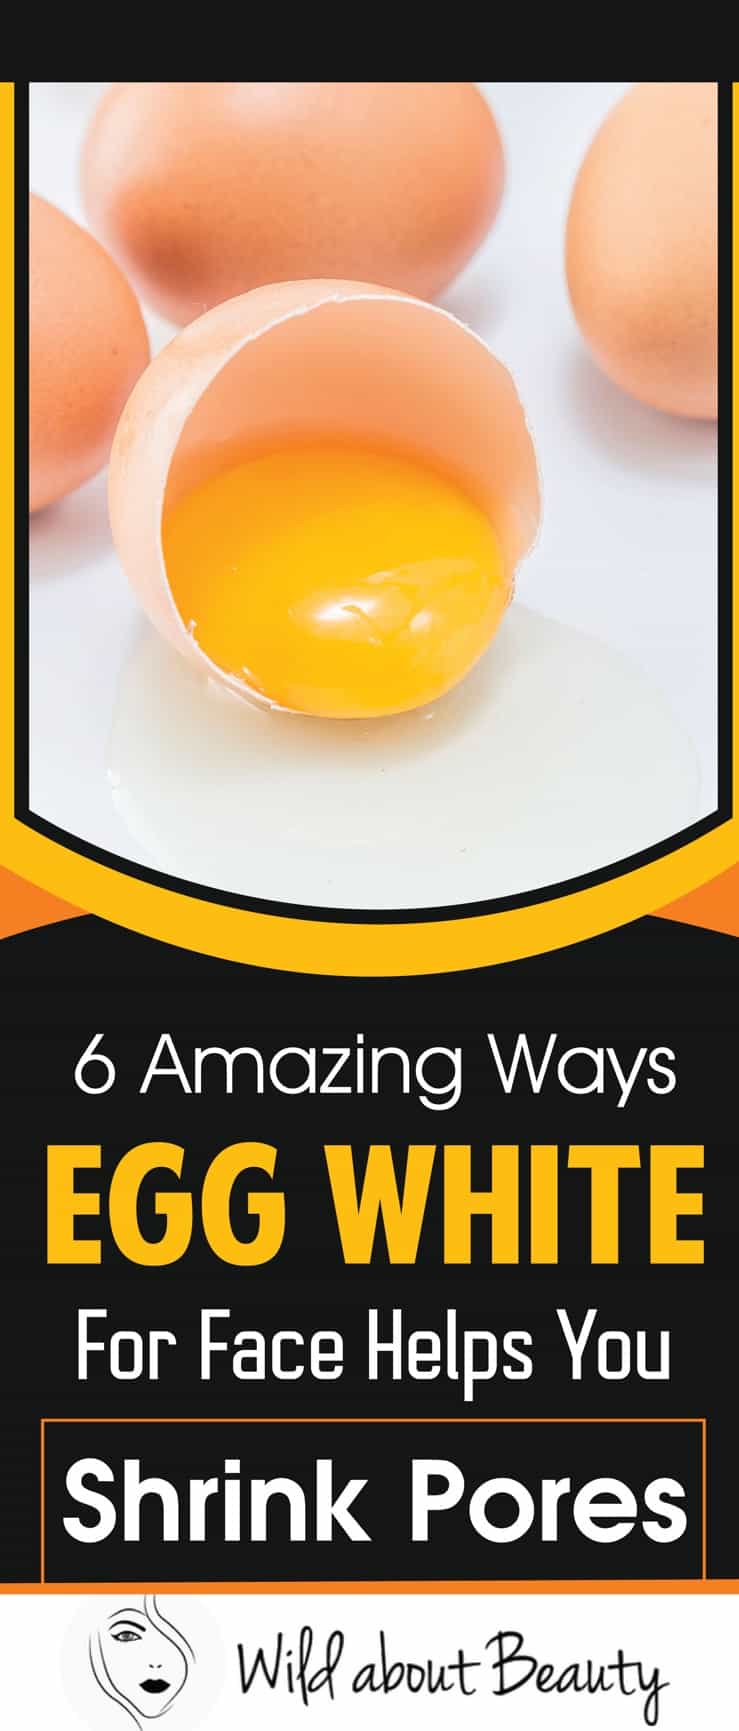 6 Amazing Ways Egg White